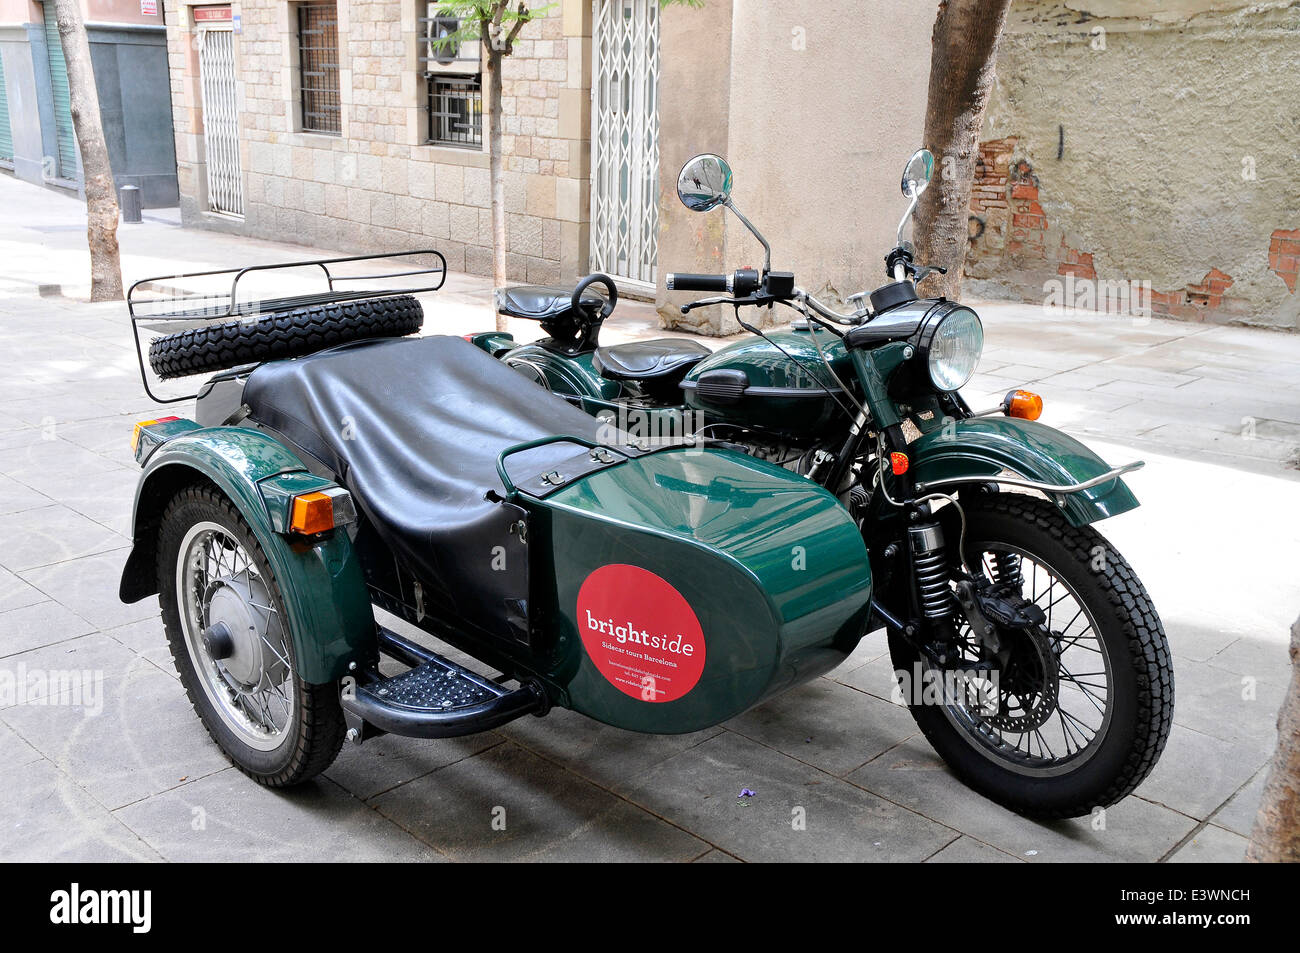 Moto avec side-car offre touristique de Barcelone pour les excursions en ville Banque D'Images